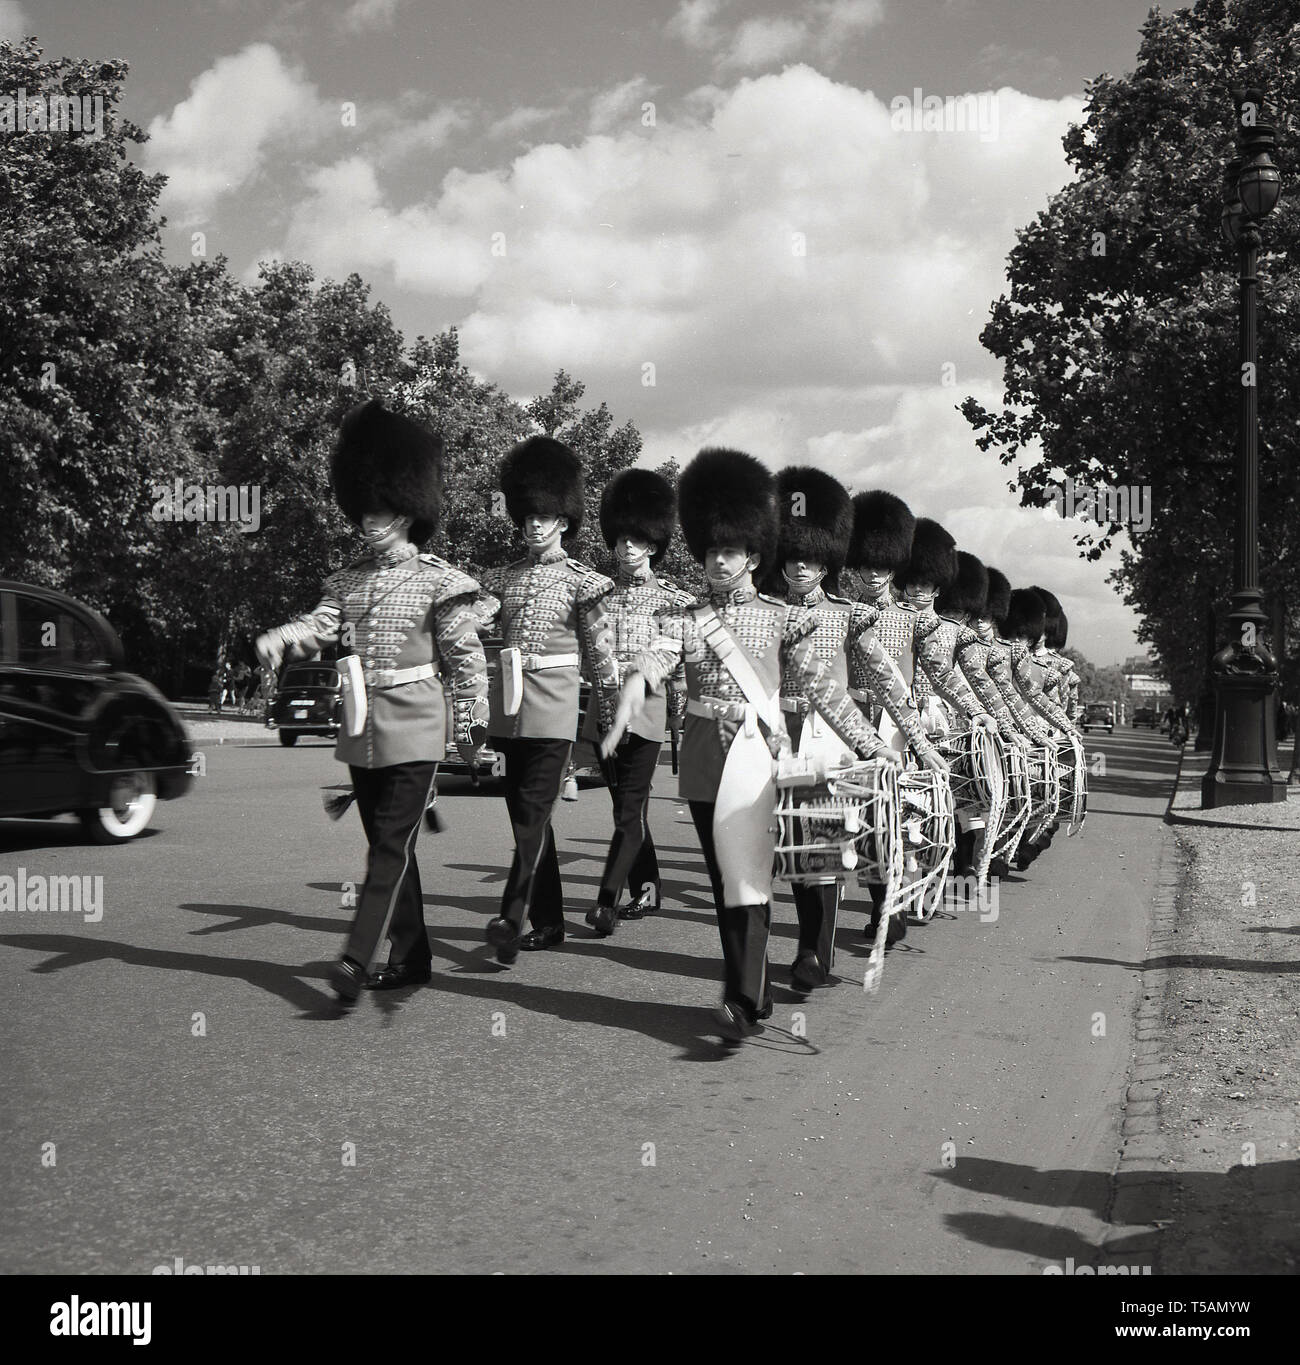 Années 1960, historique, 1er Bataillon Grenadier Guards corps de tambours en uniforme et casques bearskin marchant le long du Mall, route entre Buckingham Palace et Trafalgar Square, Londres, Angleterre, Banque D'Images